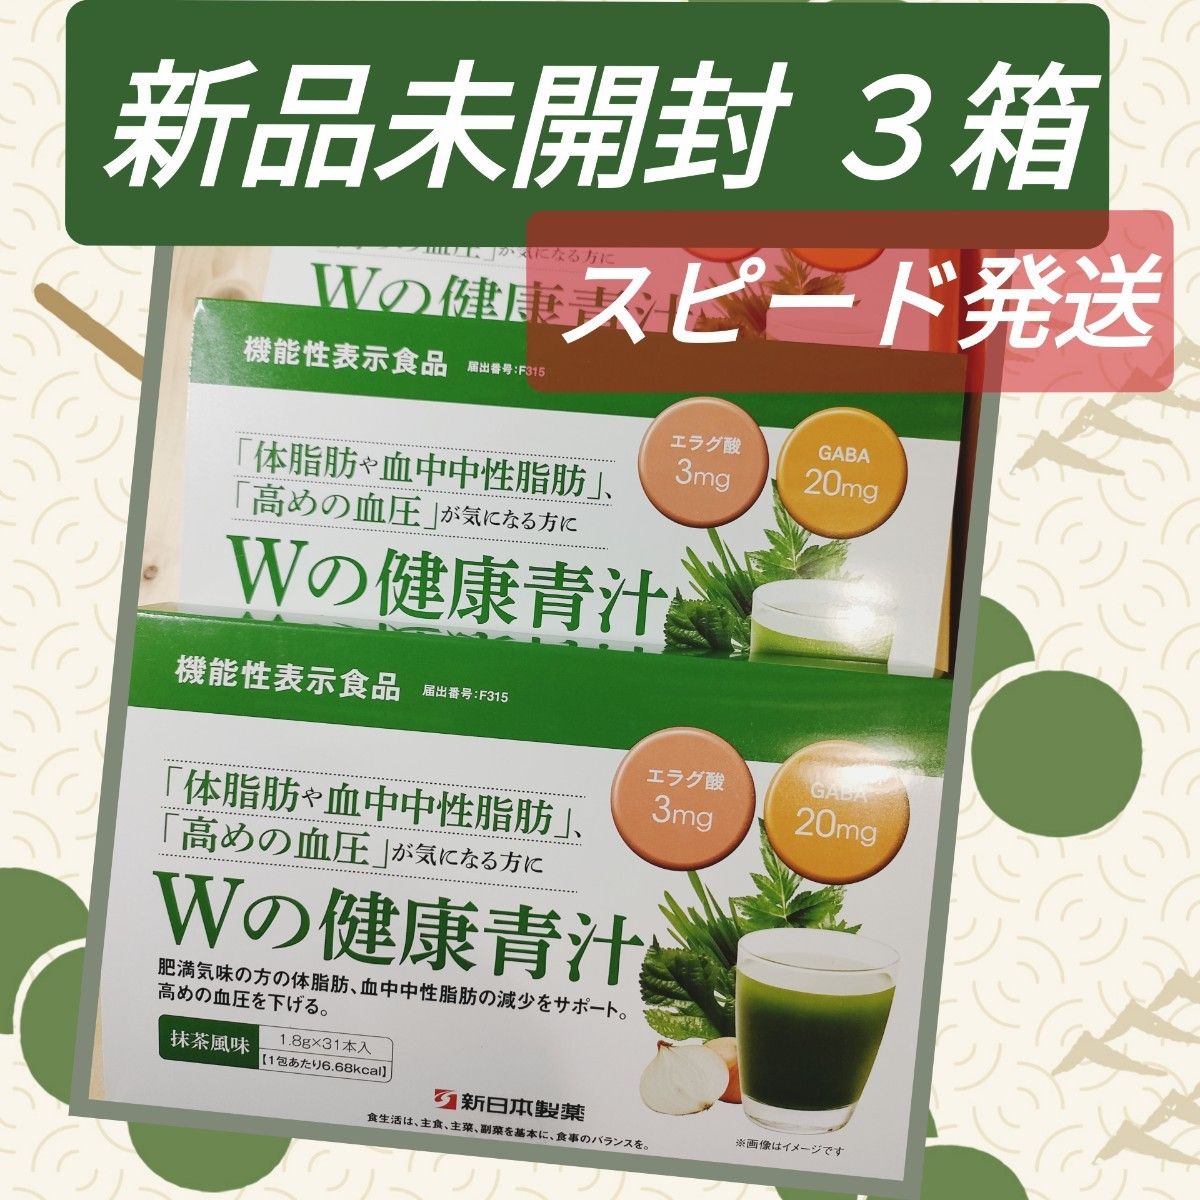 信頼】 新日本製薬 生活習慣サポート Wの健康青汁 3箱 青汁/ケール加工